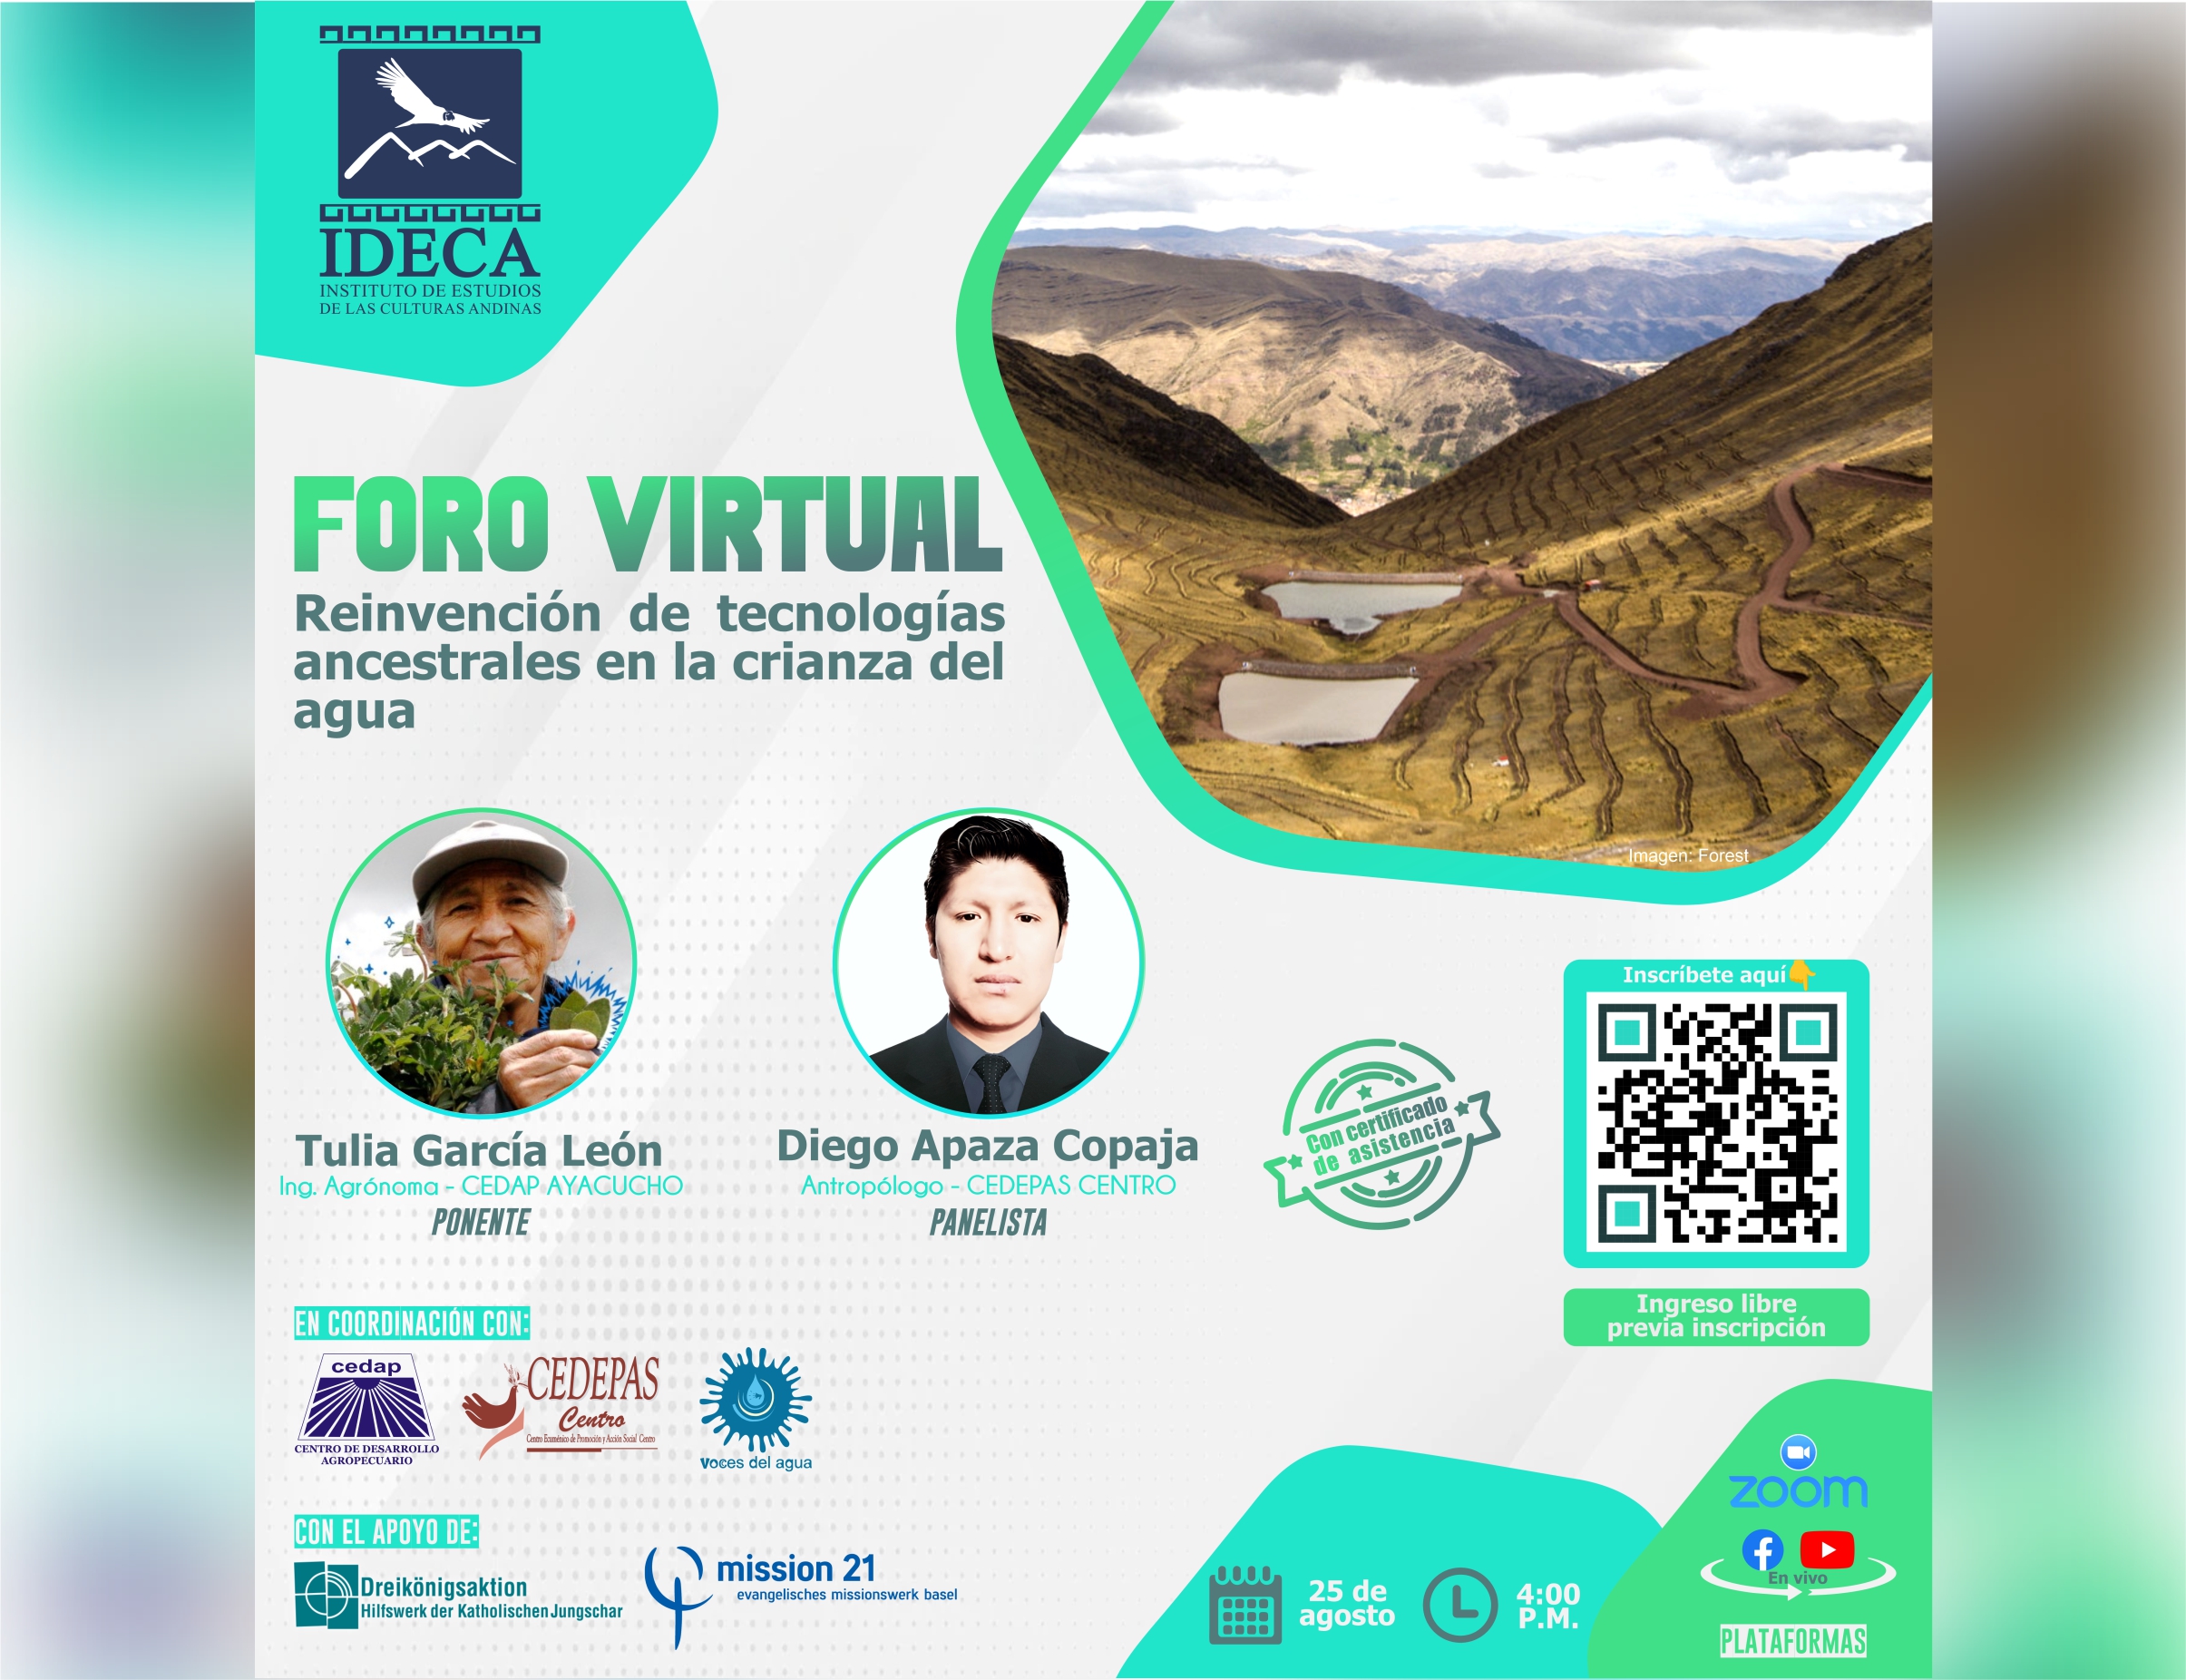 El Ideca Perú organiza foro virtual sobre reinvención de tecnologías ancestrales en la crianza del agua